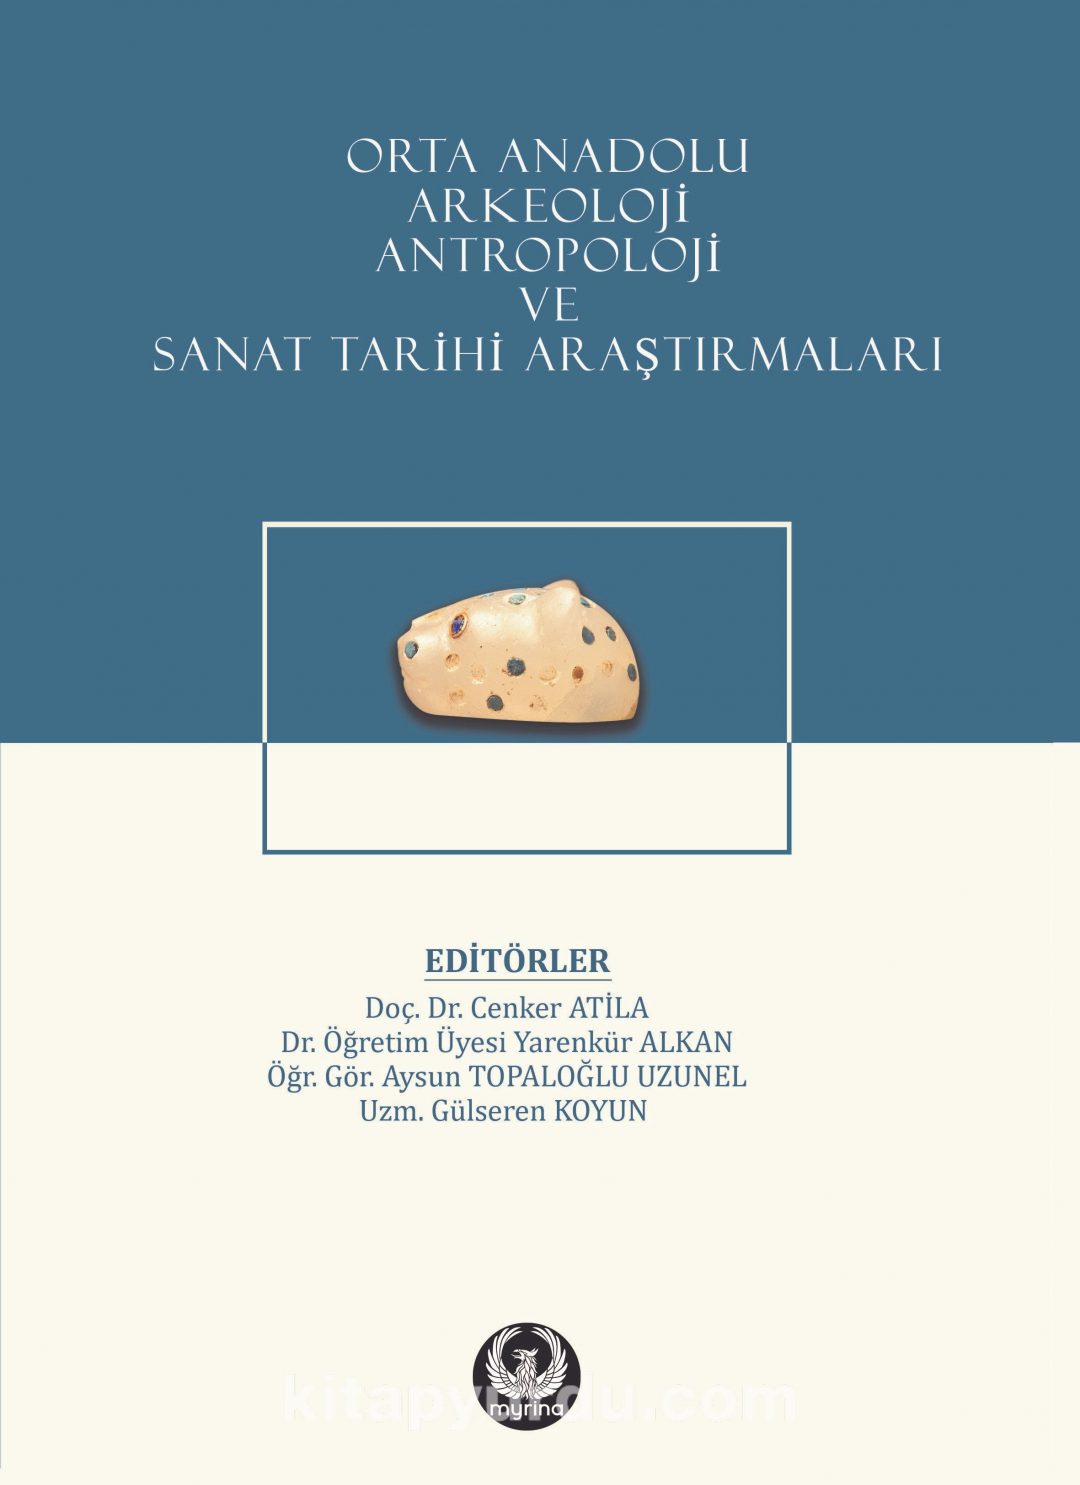 Orta Anadolu Arkeoloji, Antropoloji ve Sanat Tarihi Araştırmaları